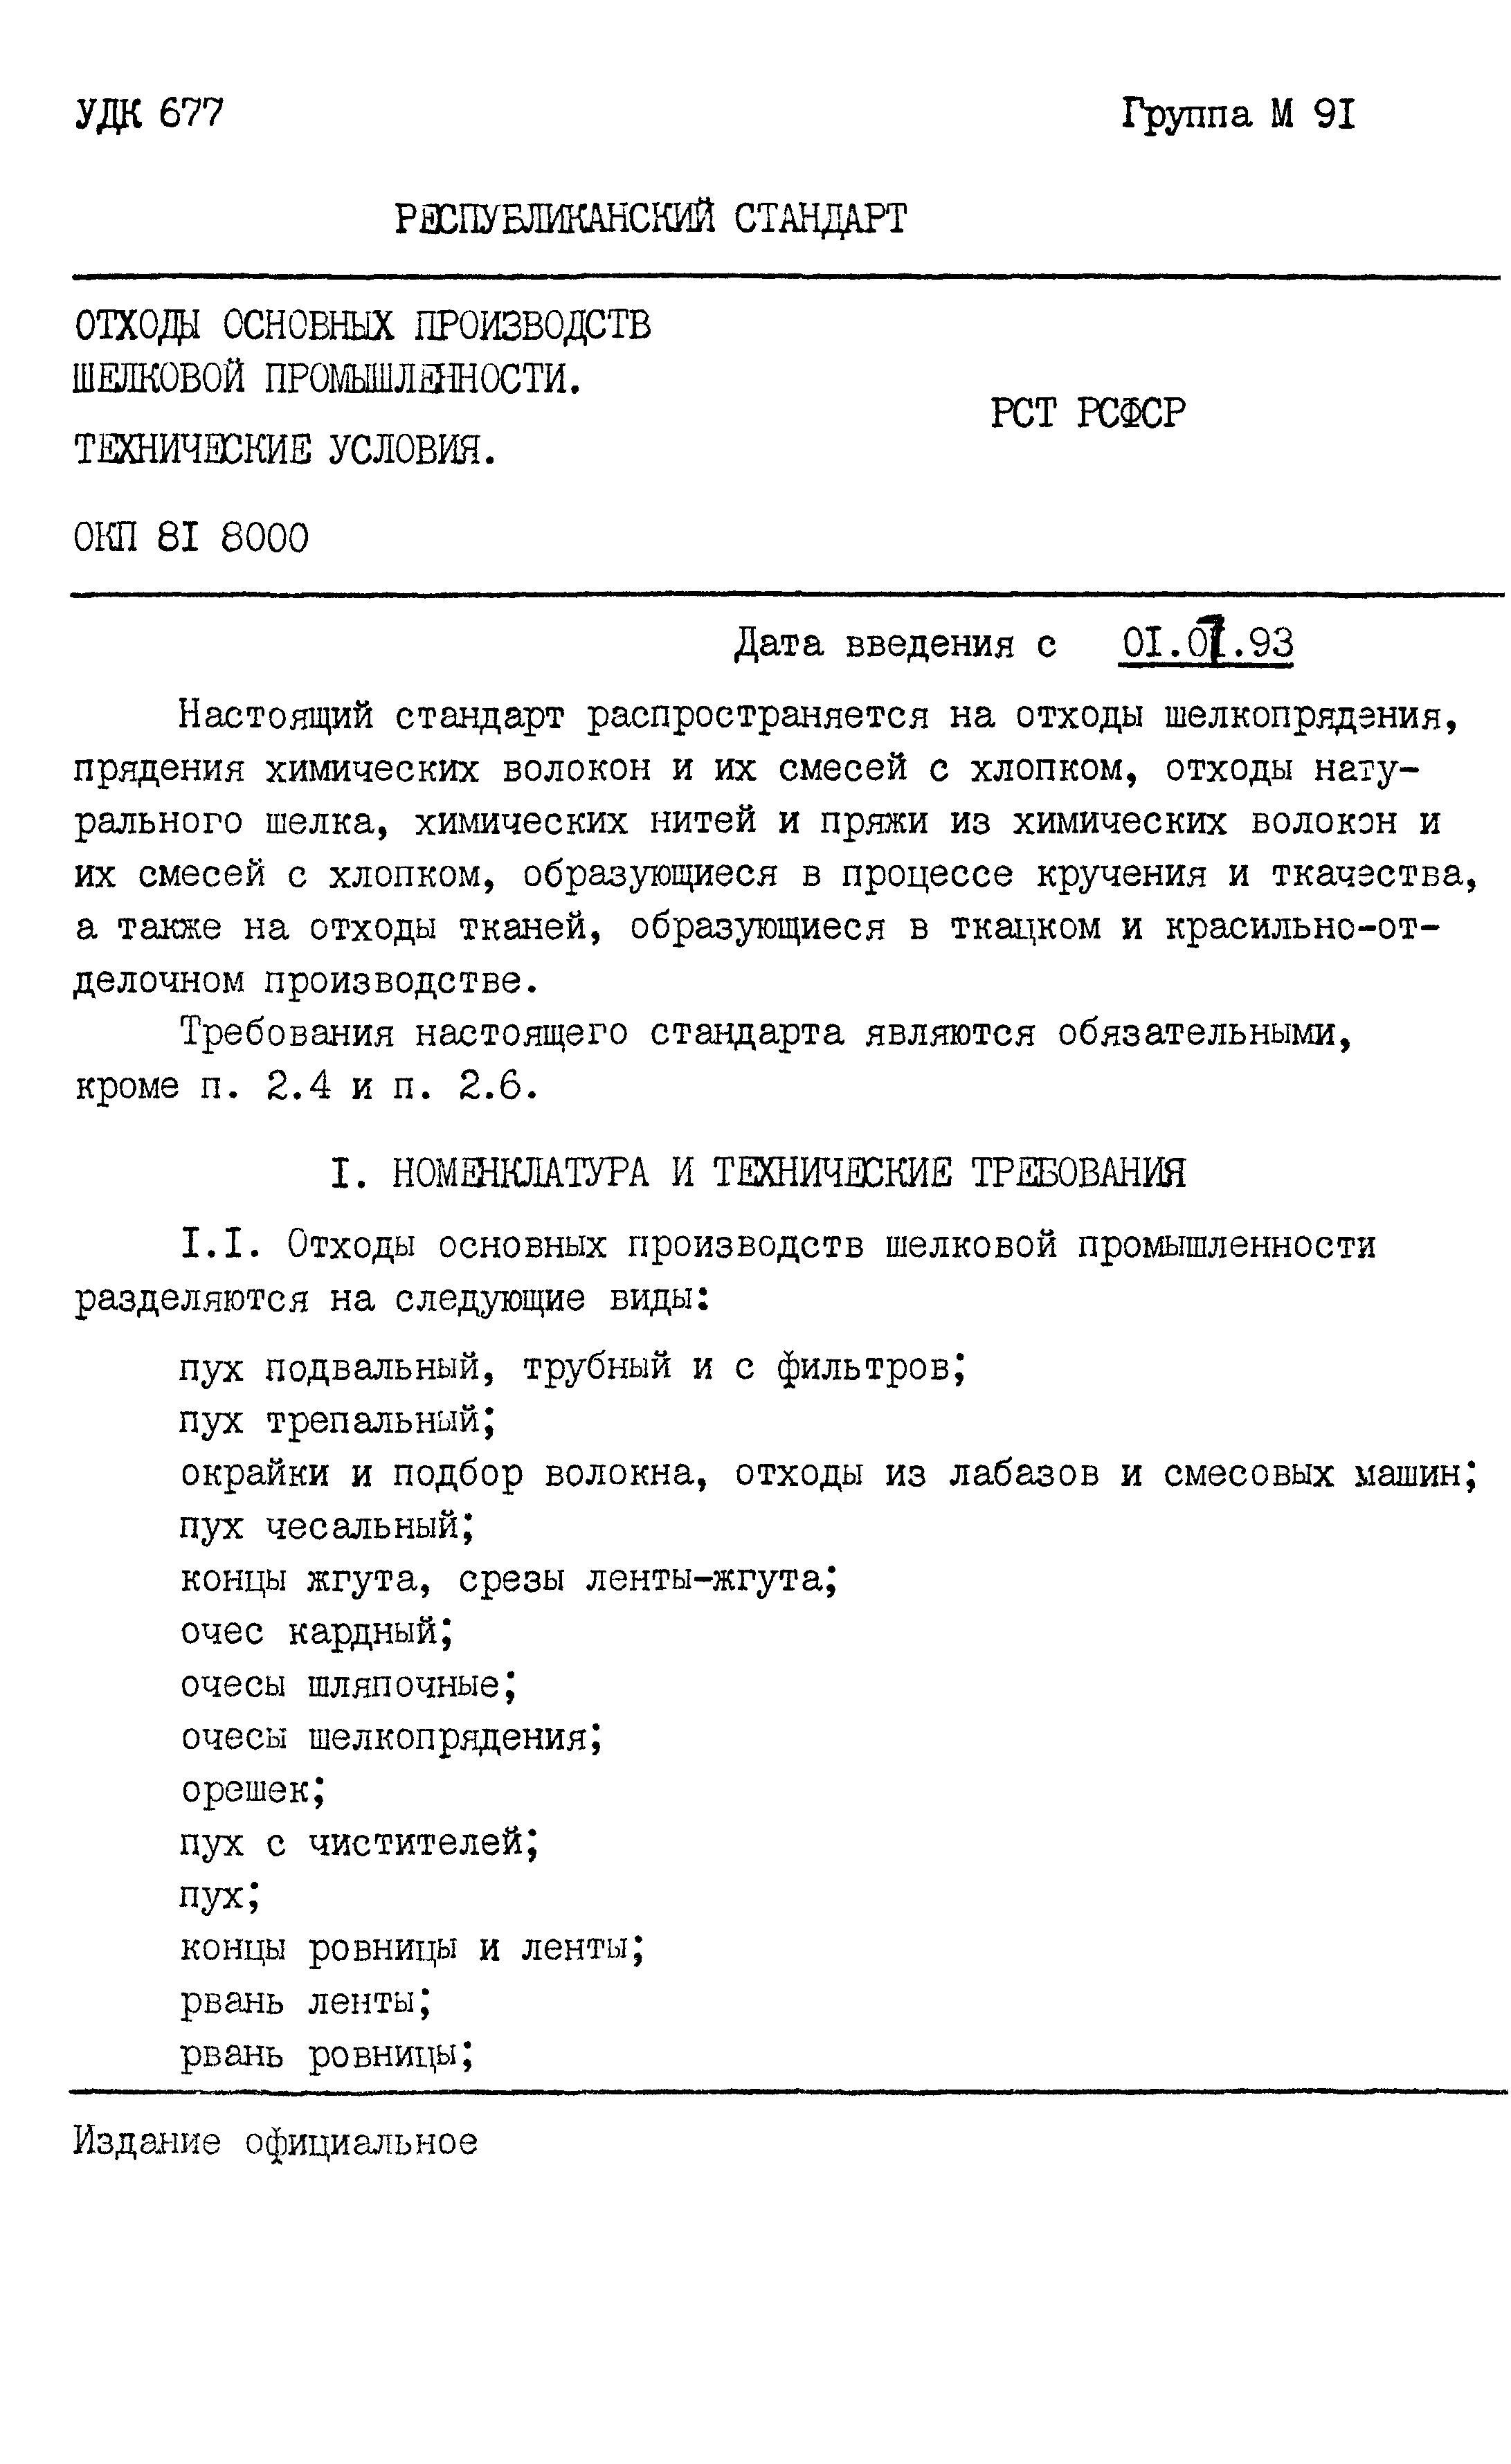 РСТ РСФСР 794-91